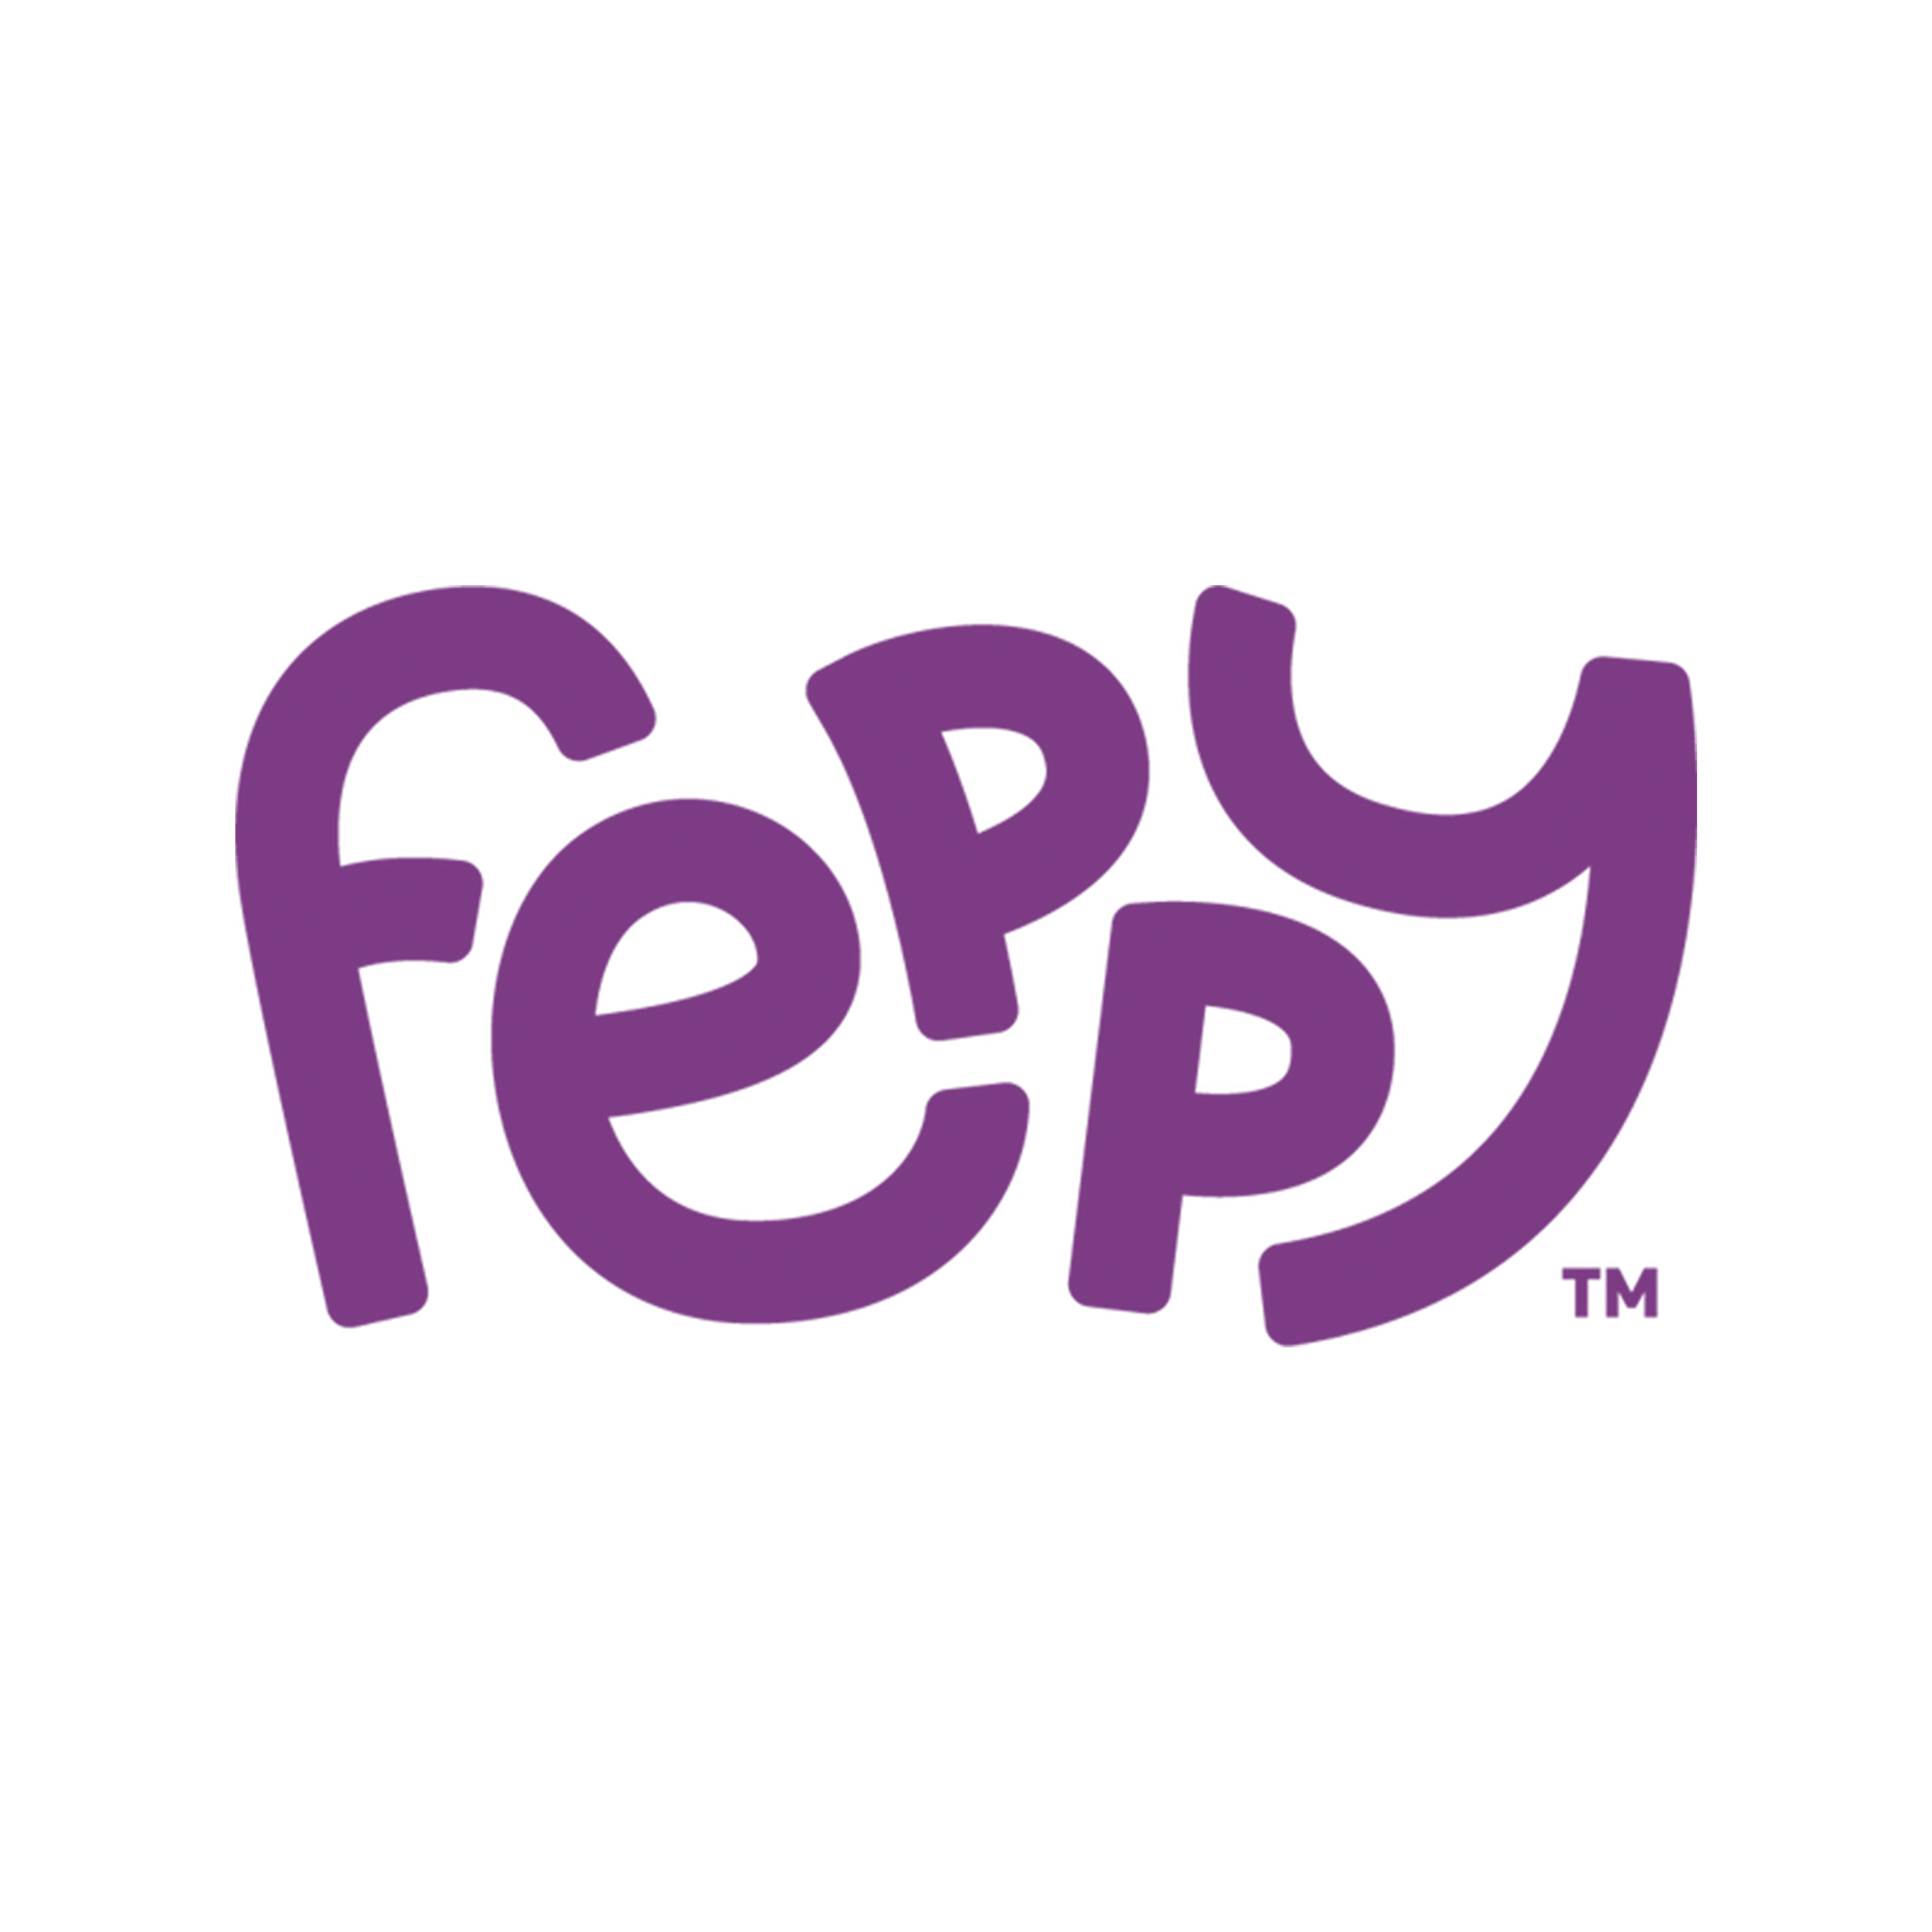 Feppy Box logo